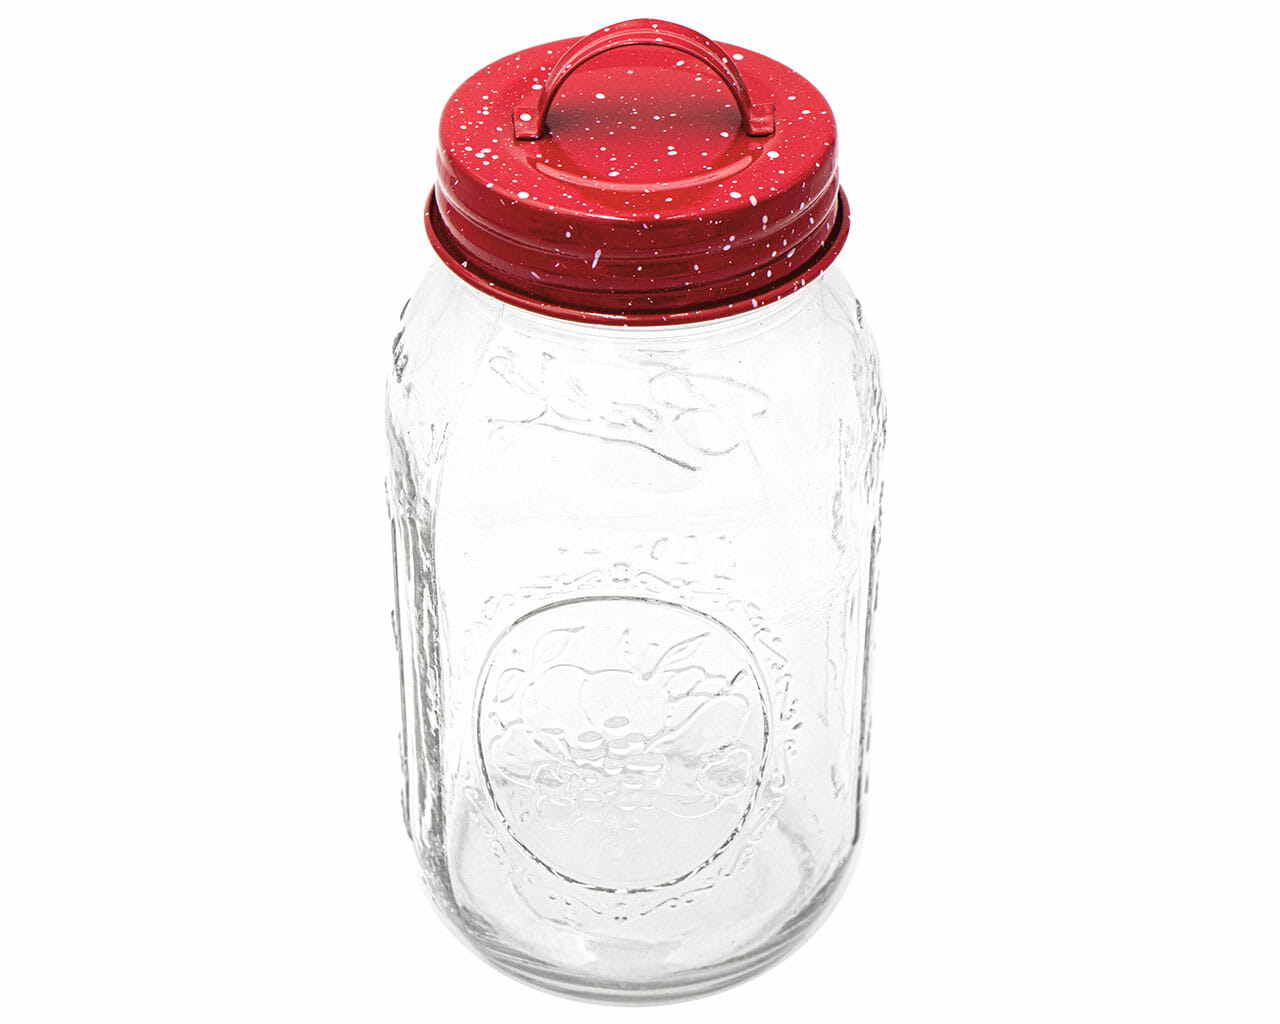 https://masonjarlifestyle.com/cdn/shop/files/mason-jar-lifestyle-regular-mouth-32oz-quart-decorative-speckled-enamel-handle-canister-lid-red.jpg?v=1695767631&width=1280